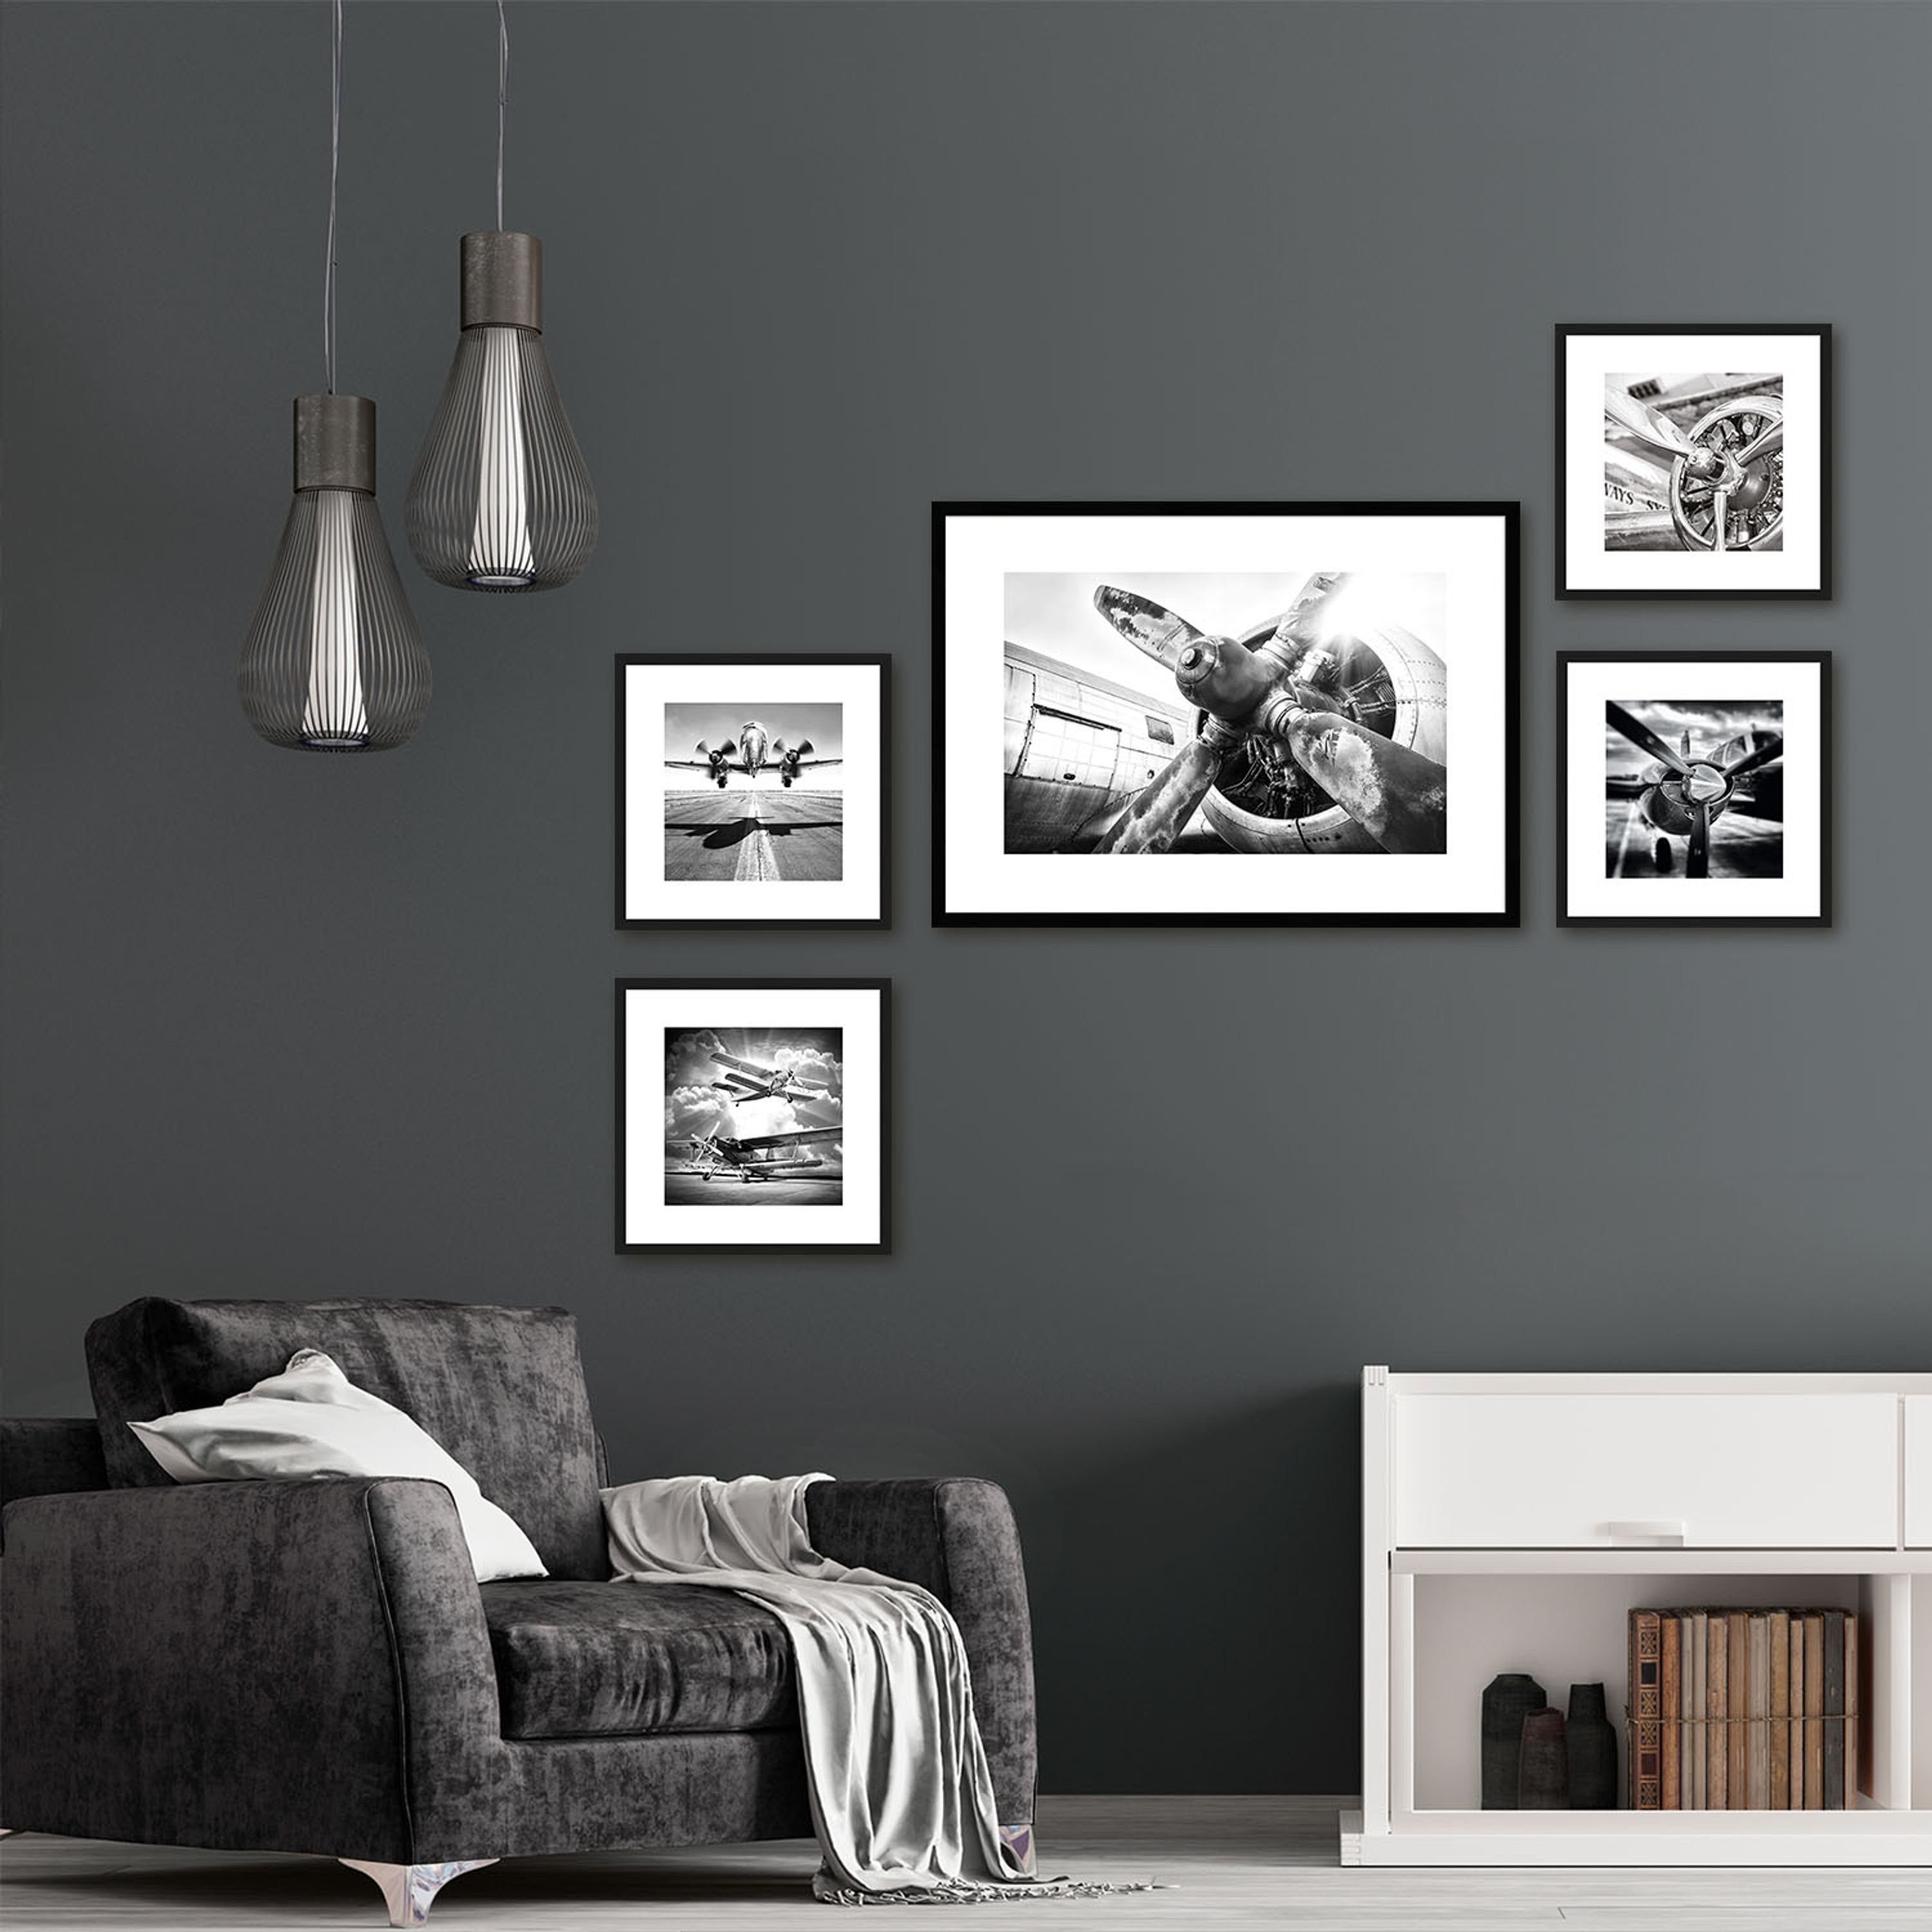 I Schwarz-Weiß gerahmt Bild Zeichnung: / Wandbild, artissimo mit Design-Poster 30x30cm inkl. Bild Flugzeuge Holz-Rahmen Rahmen /